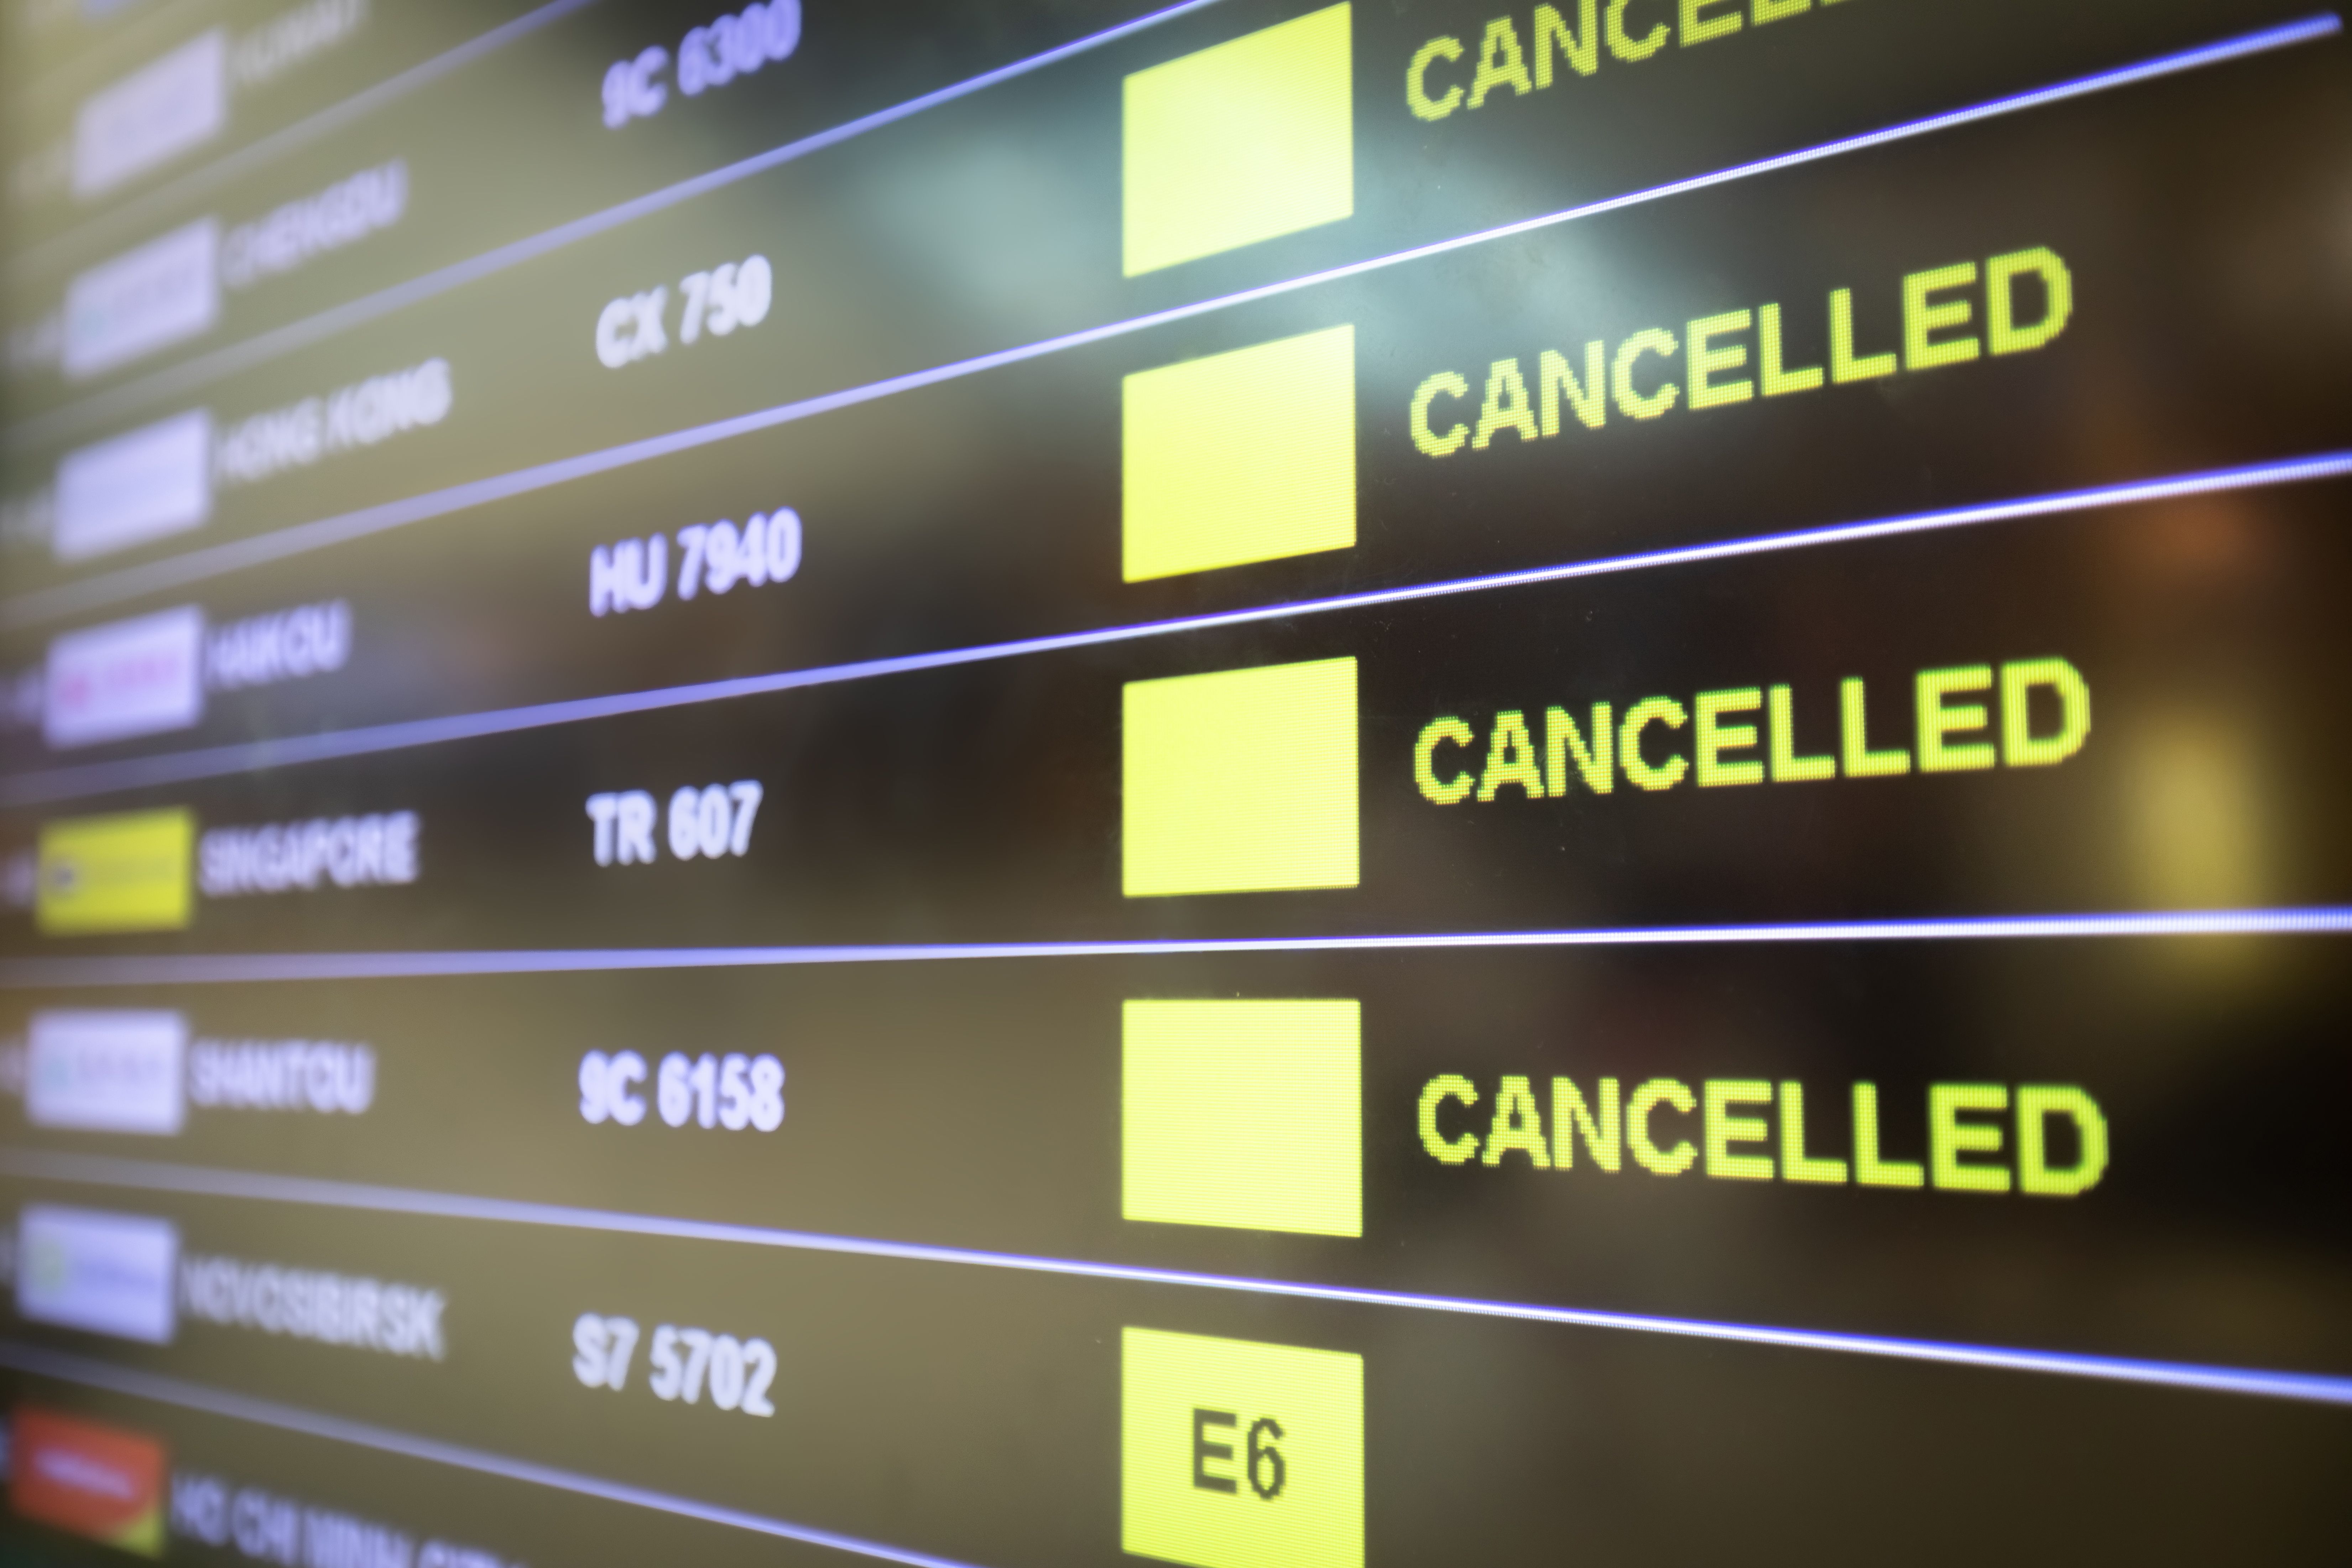 Flight cancellation board